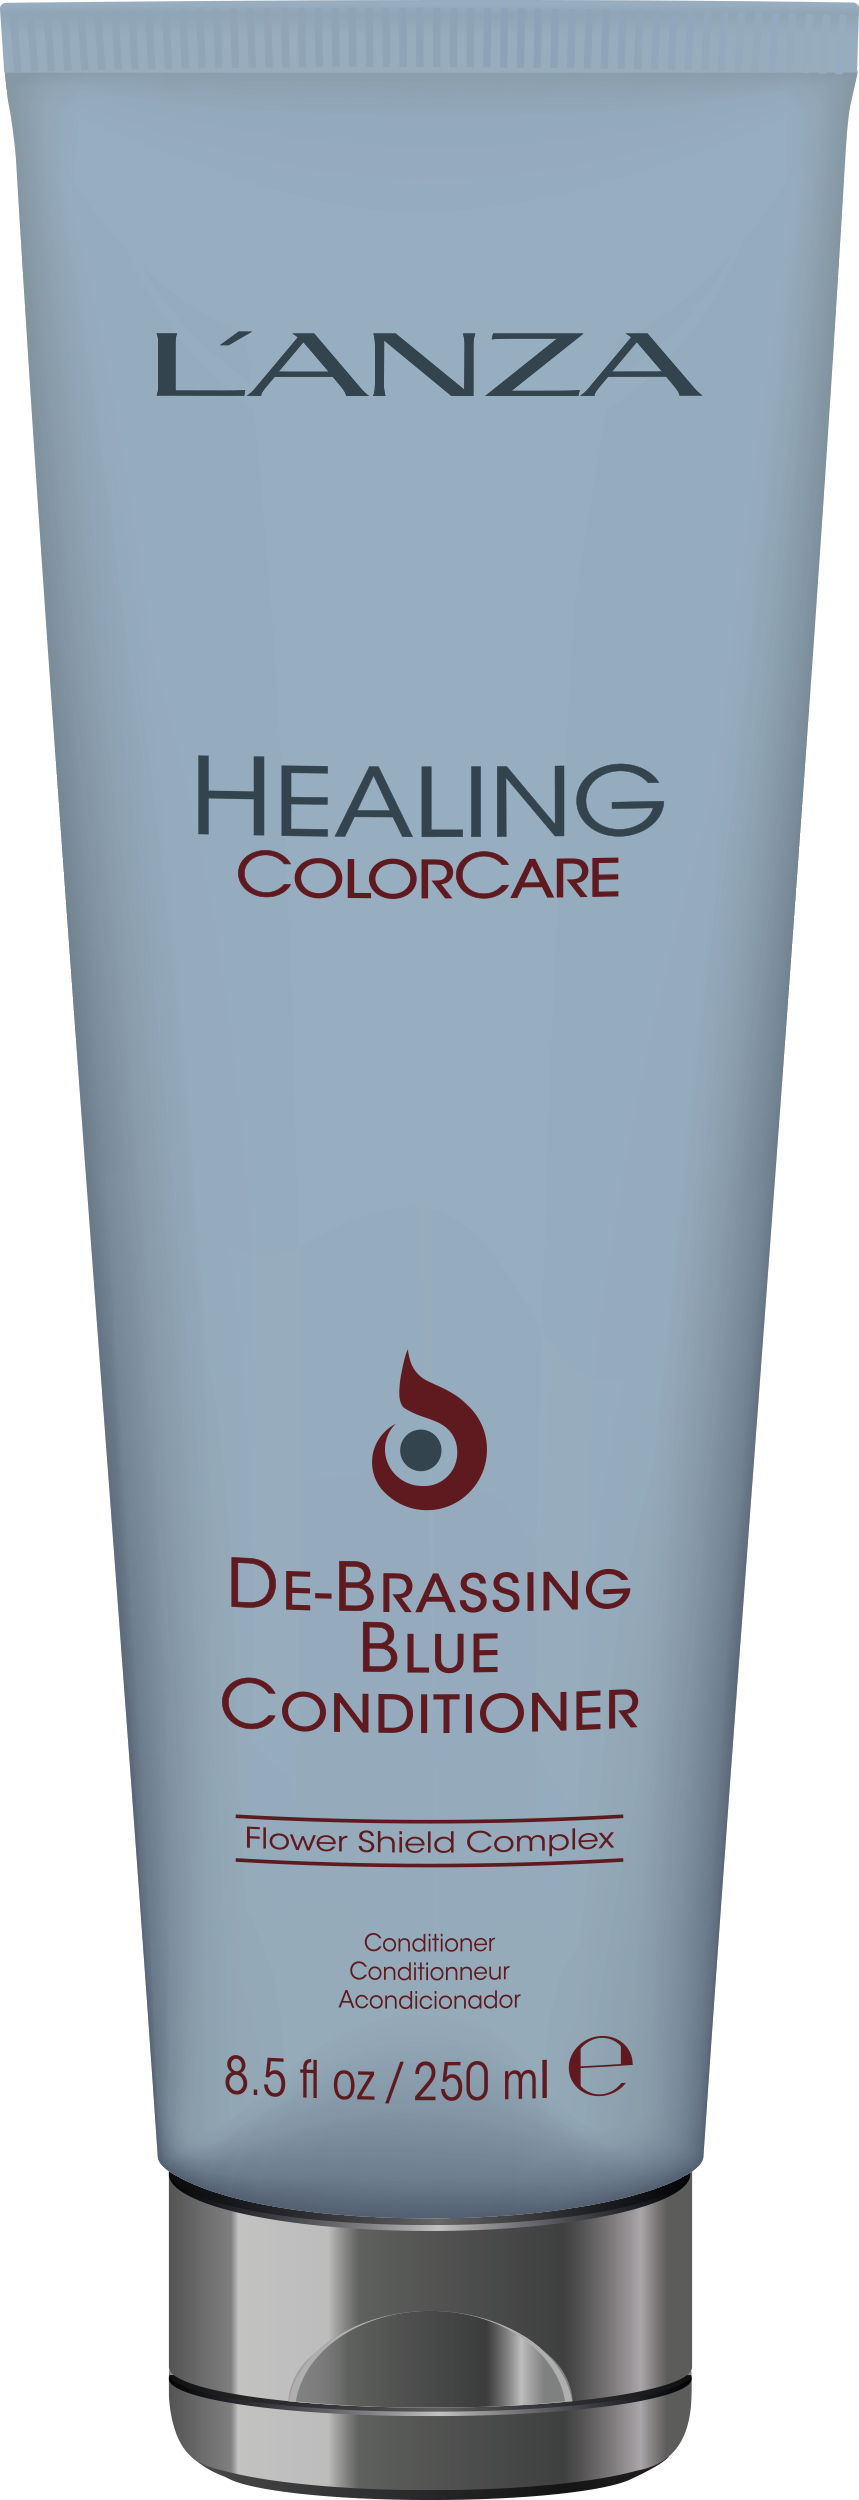 L'ANZA Healing colorcare  De-Brassing Blue Conditioner